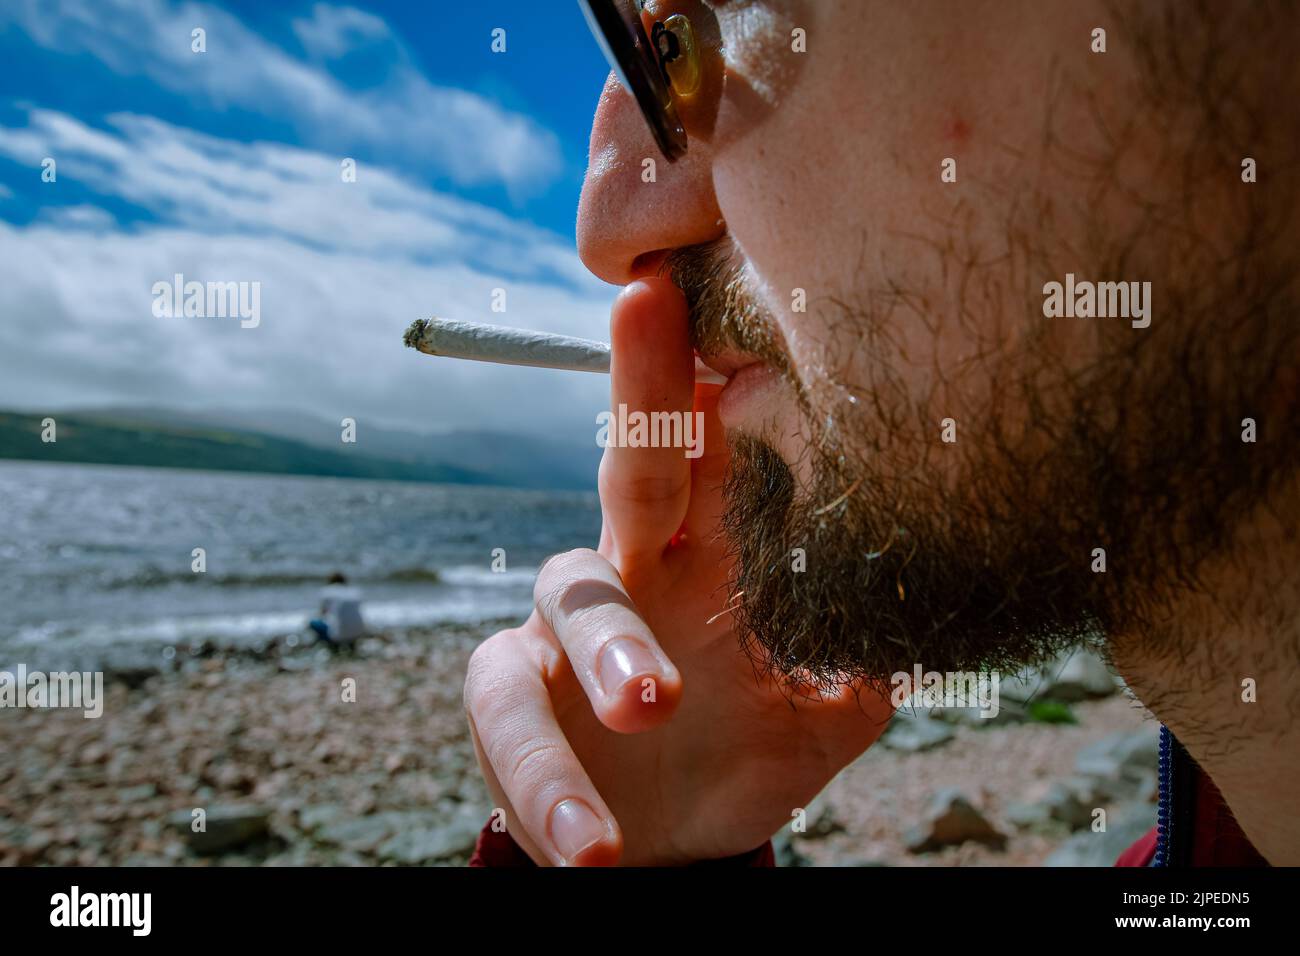 Détail d'un homme qui fume un joint de marijuana ou de mauvaise herbe se détendant sur la rive d'un lac. Banque D'Images